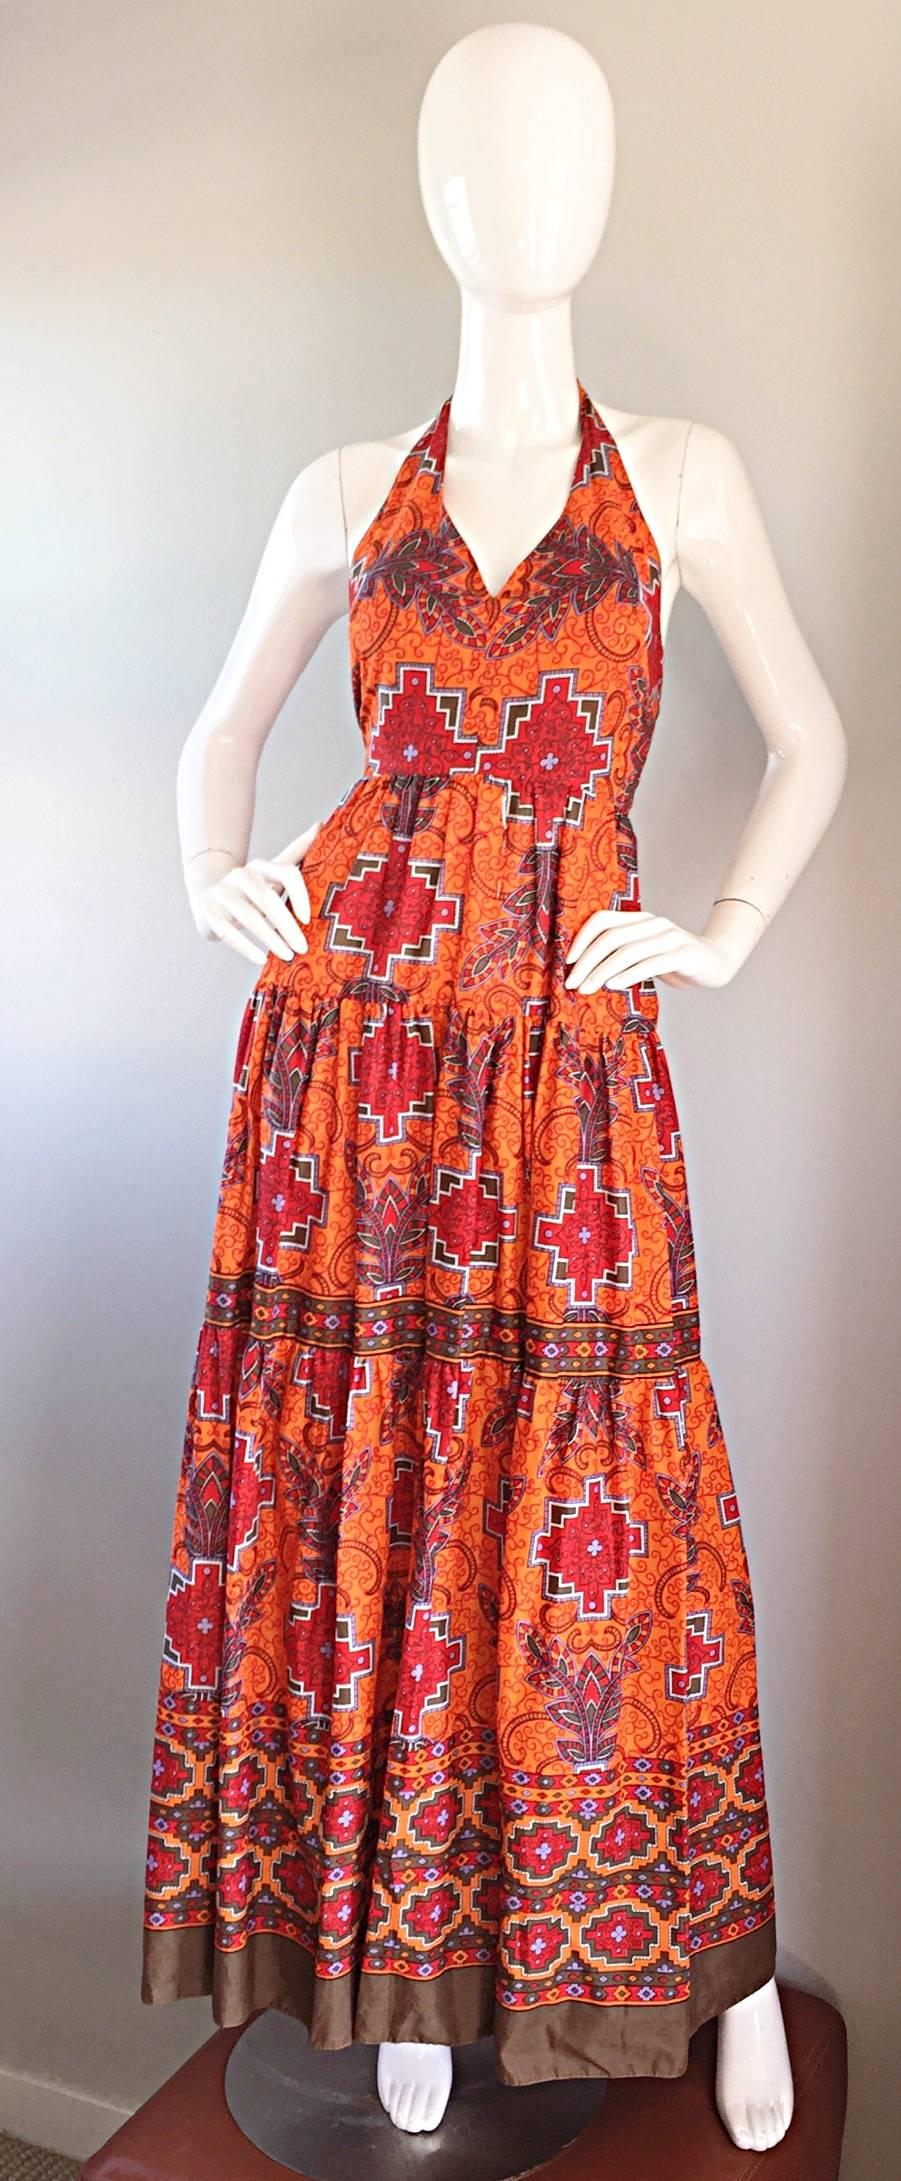 Fantastique robe longue dos nu en coton léger vintage FRANK USHER des années 70 ! Impression tribale / sud-ouest / ethnique étonnante sur l'ensemble du vêtement. Fond orange brûlé, avec des imprimés multicolores contrastés. Fermeture à glissière en